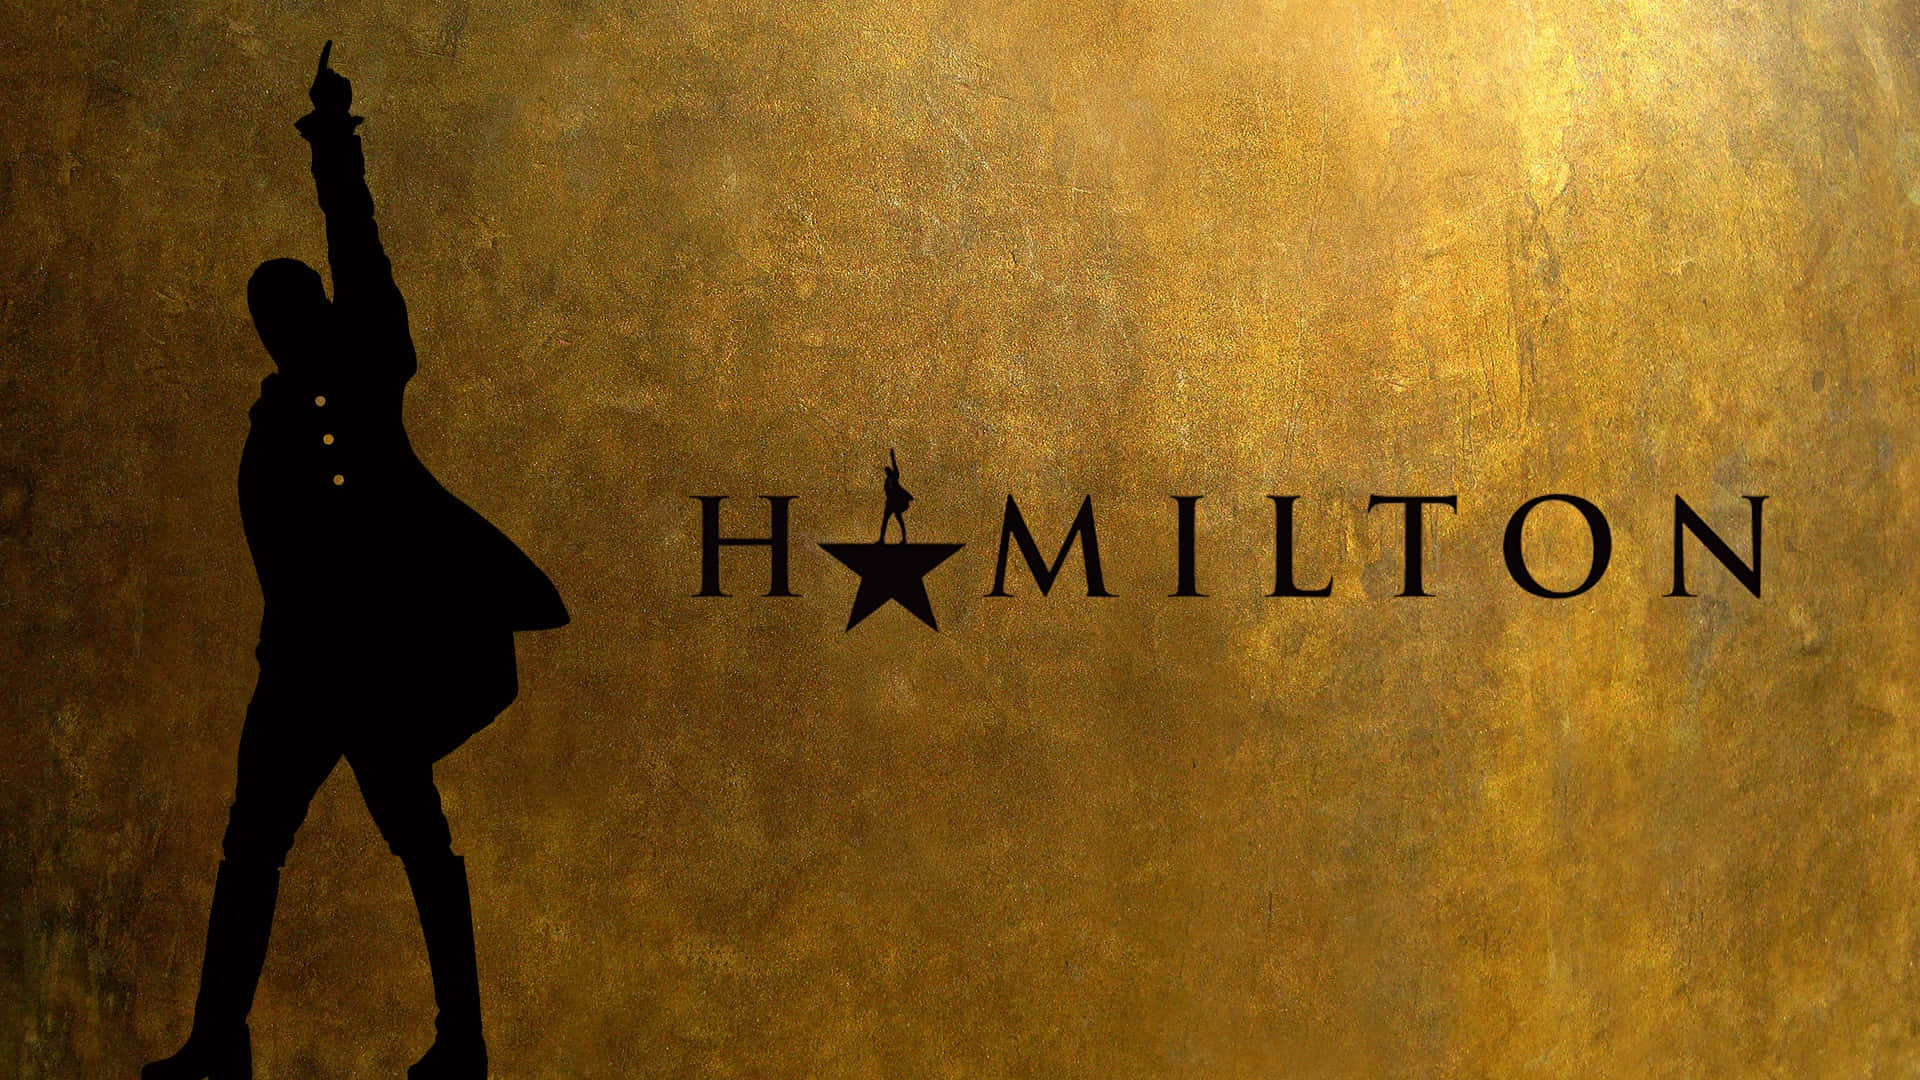 Papelde Parede Do Logotipo Do Musical Hamilton Para Desktop.